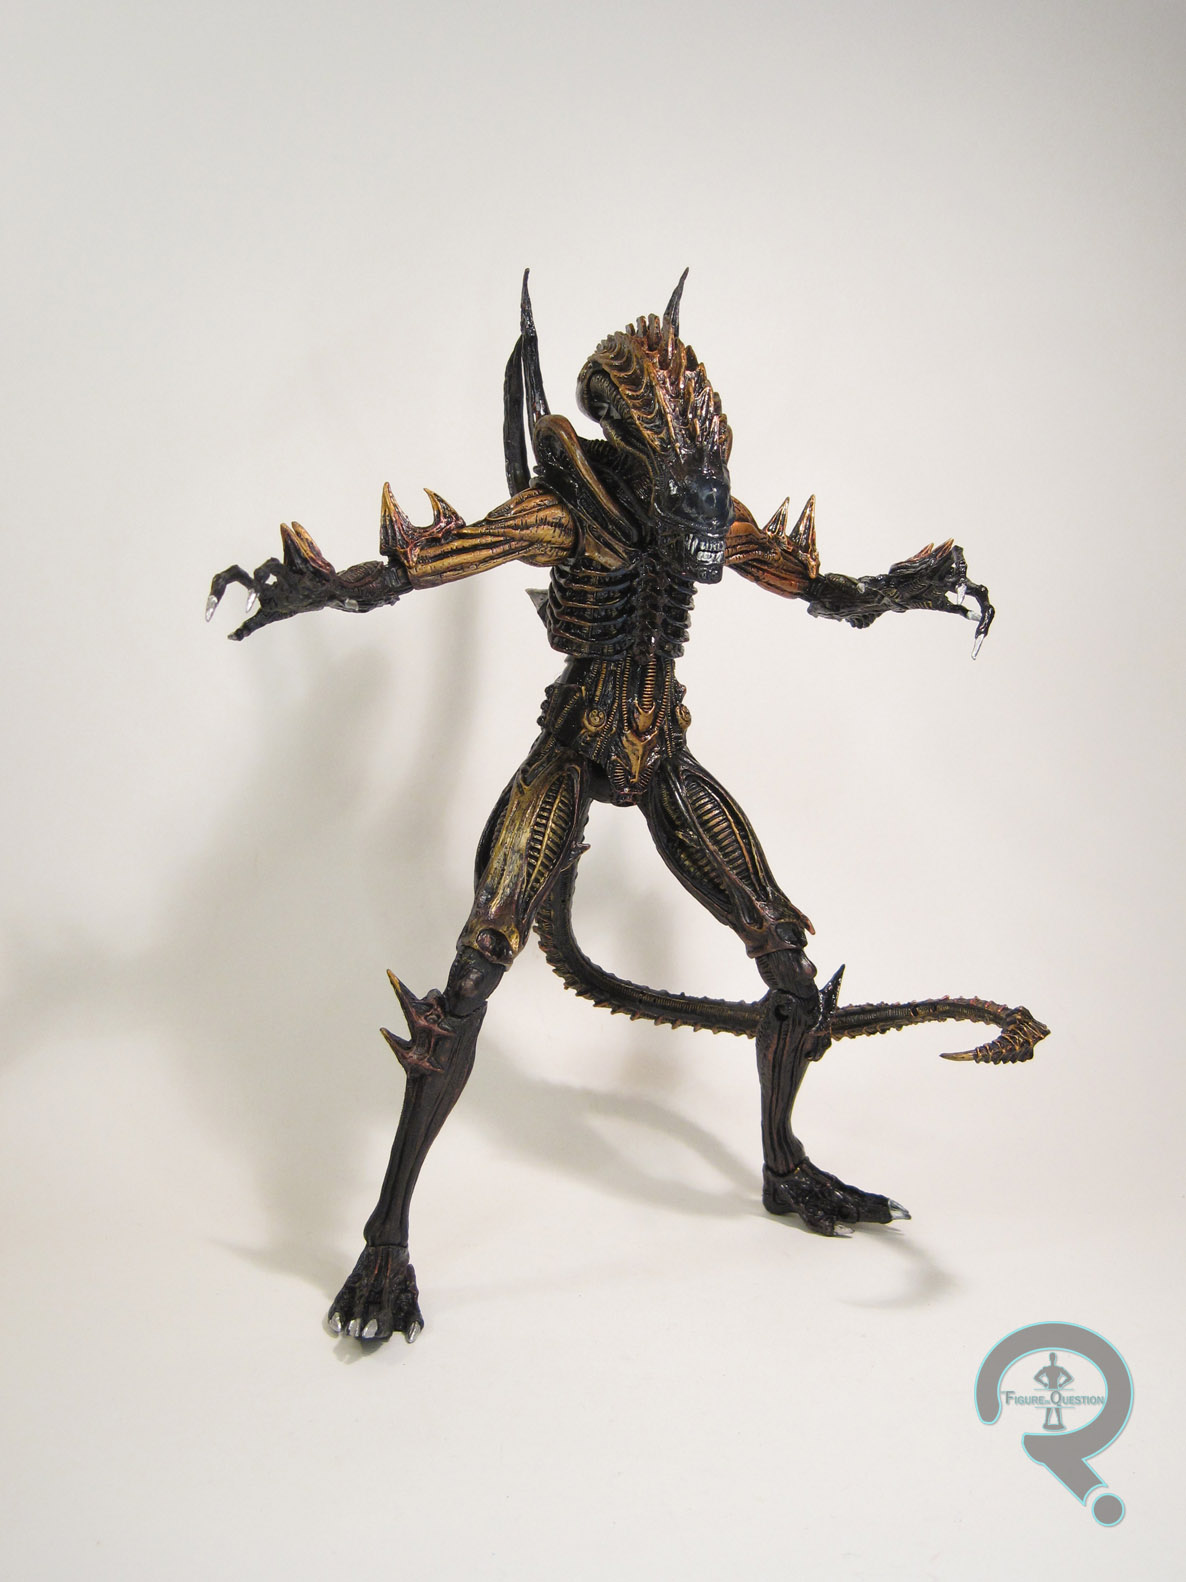 kenner scorpion alien